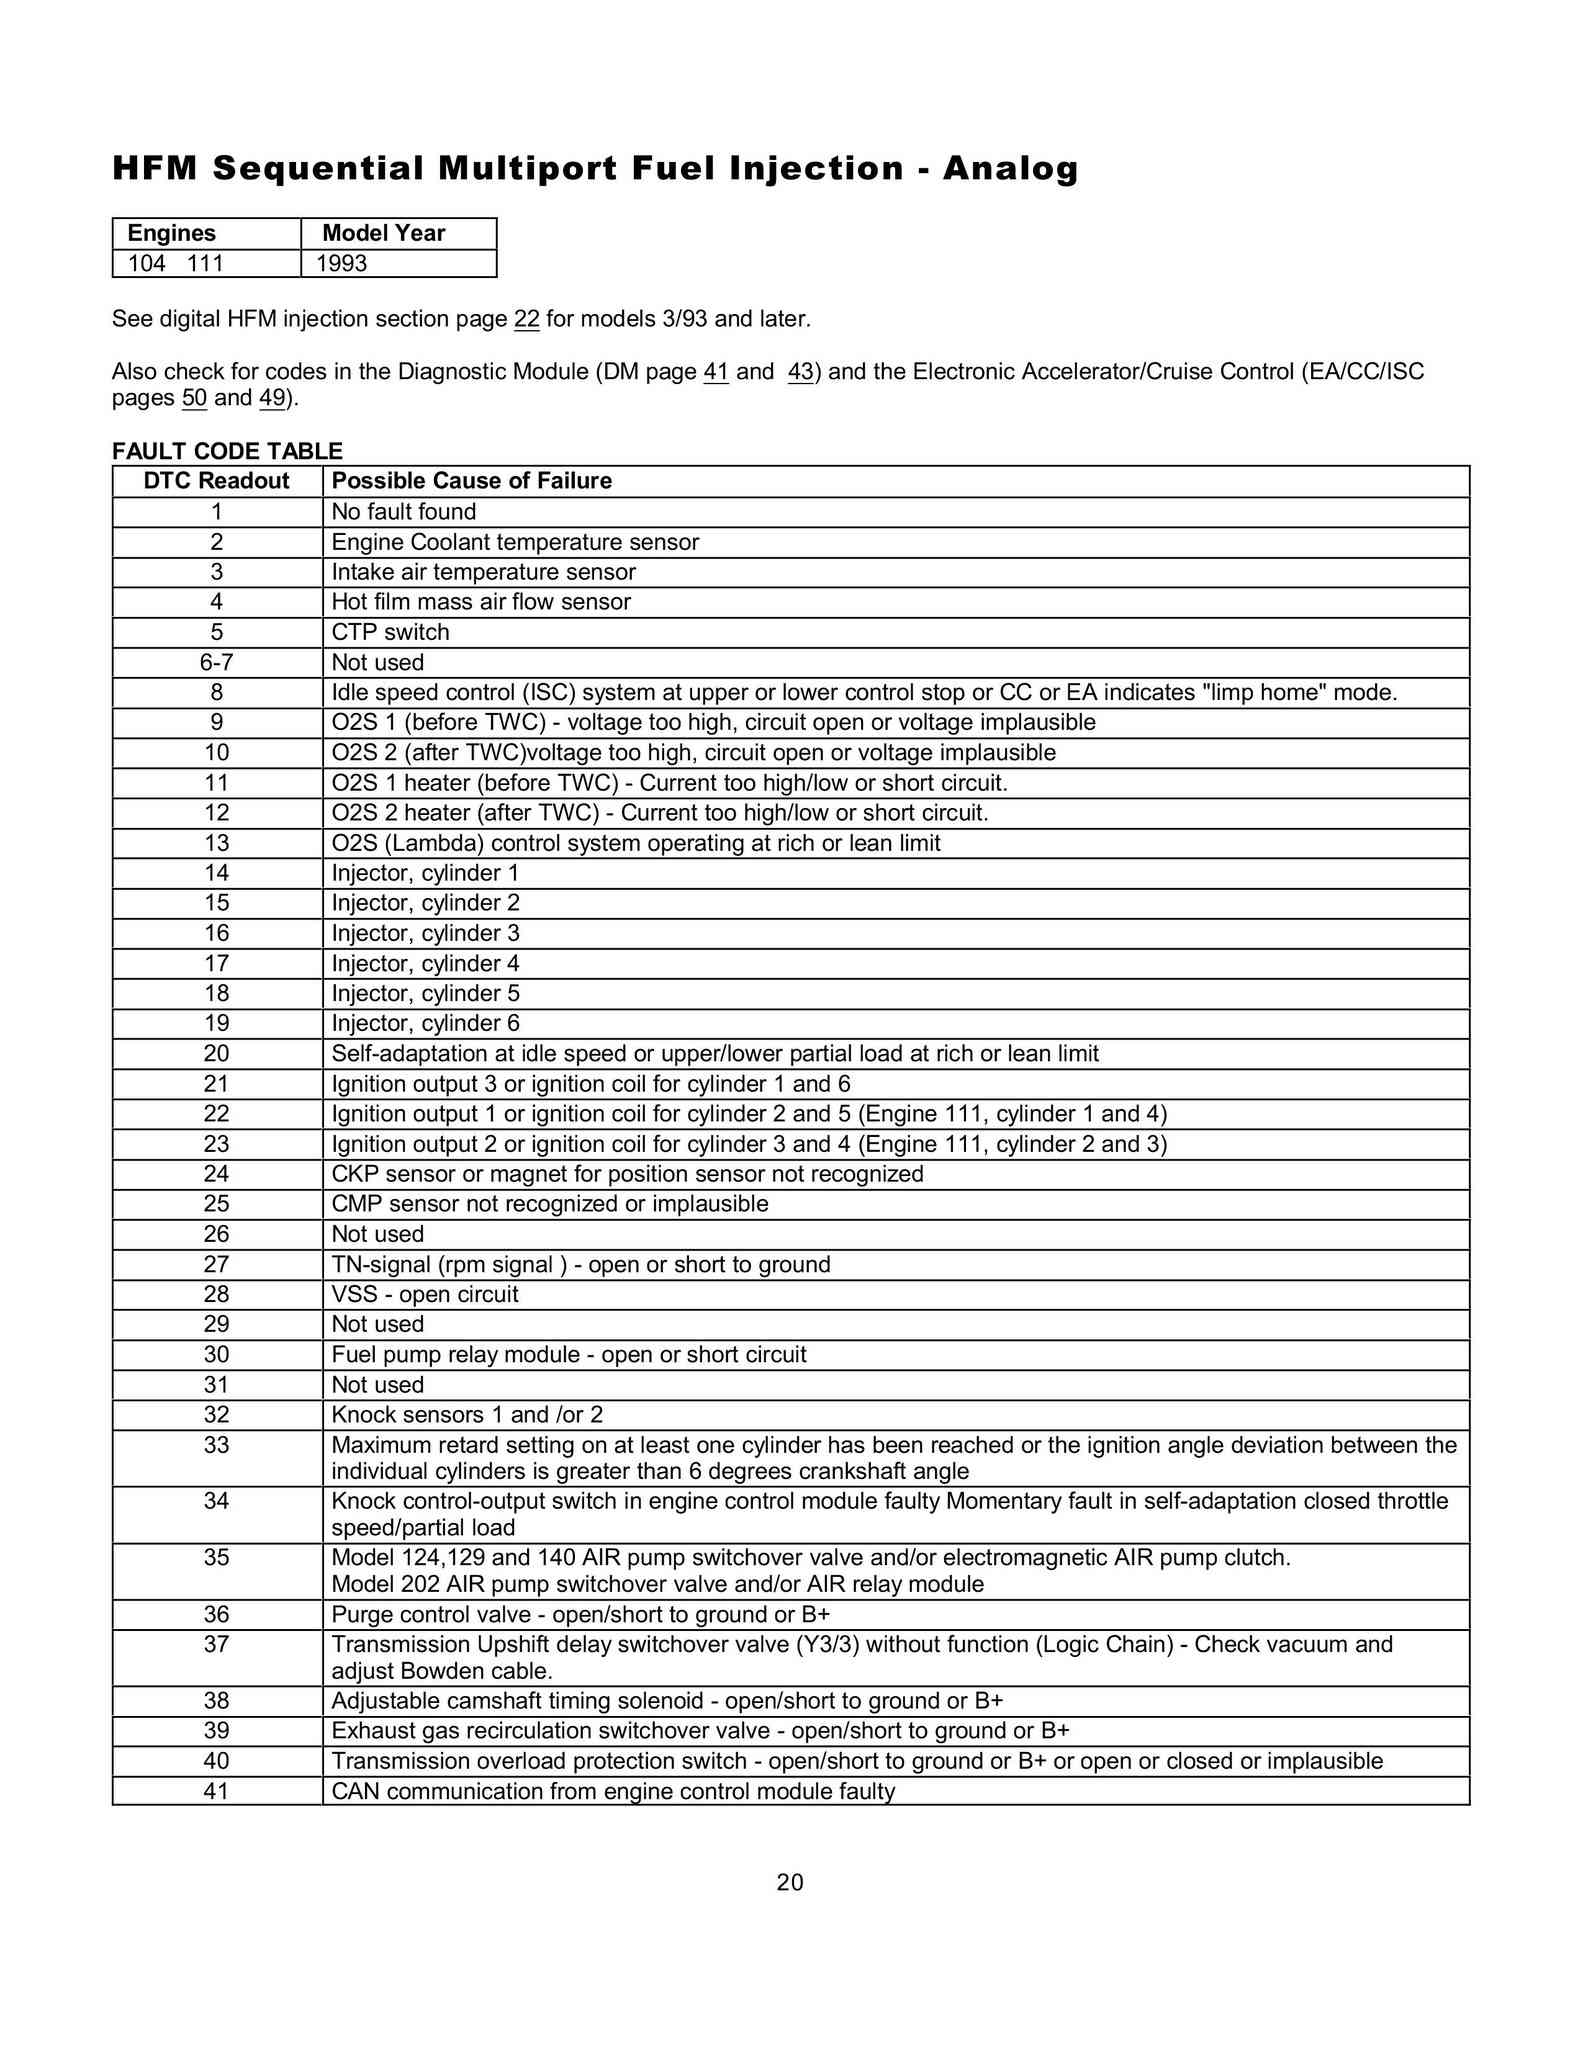 Lista de Códigos de falhas (fault codes) Mercedes-Benz 002013